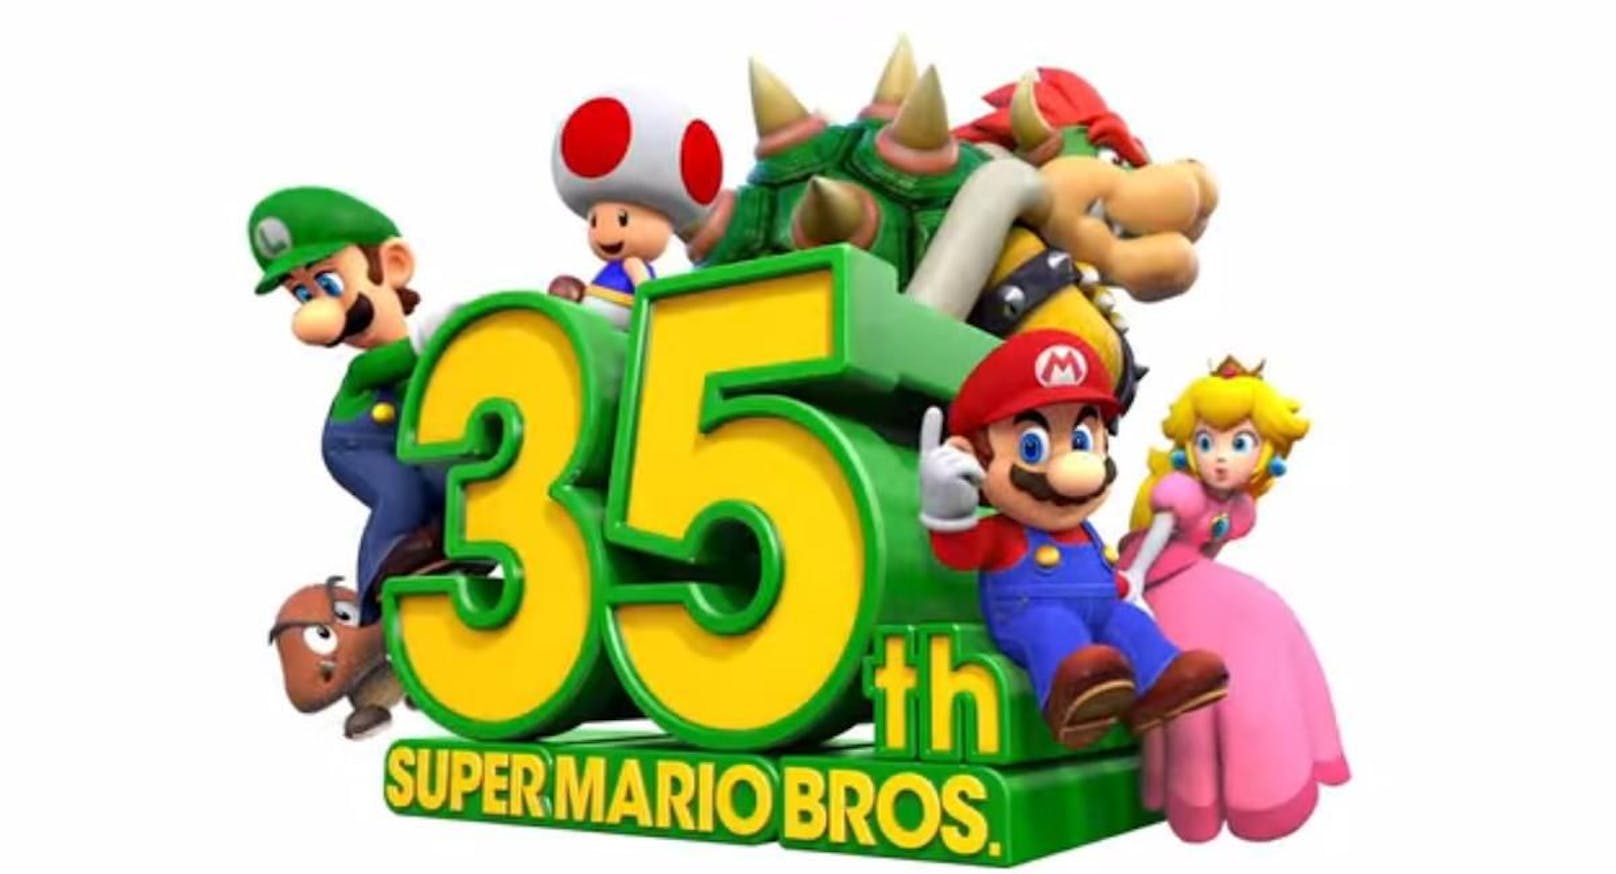 <strong>10. "Super Mario 3D All-Stars"</strong><br> Nintendo kurbelte die Verkäufe von All-Stars an, indem der Entwickler ankündigte, dass das Jubiläumspaket nur bis März 2021 zum Verkauf stehen wird. Der kontroverse Schritt führte dazu, dass die Firma beim Launch innerhalb einer Woche über 5 Millionen Kopien verkaufen konnte.